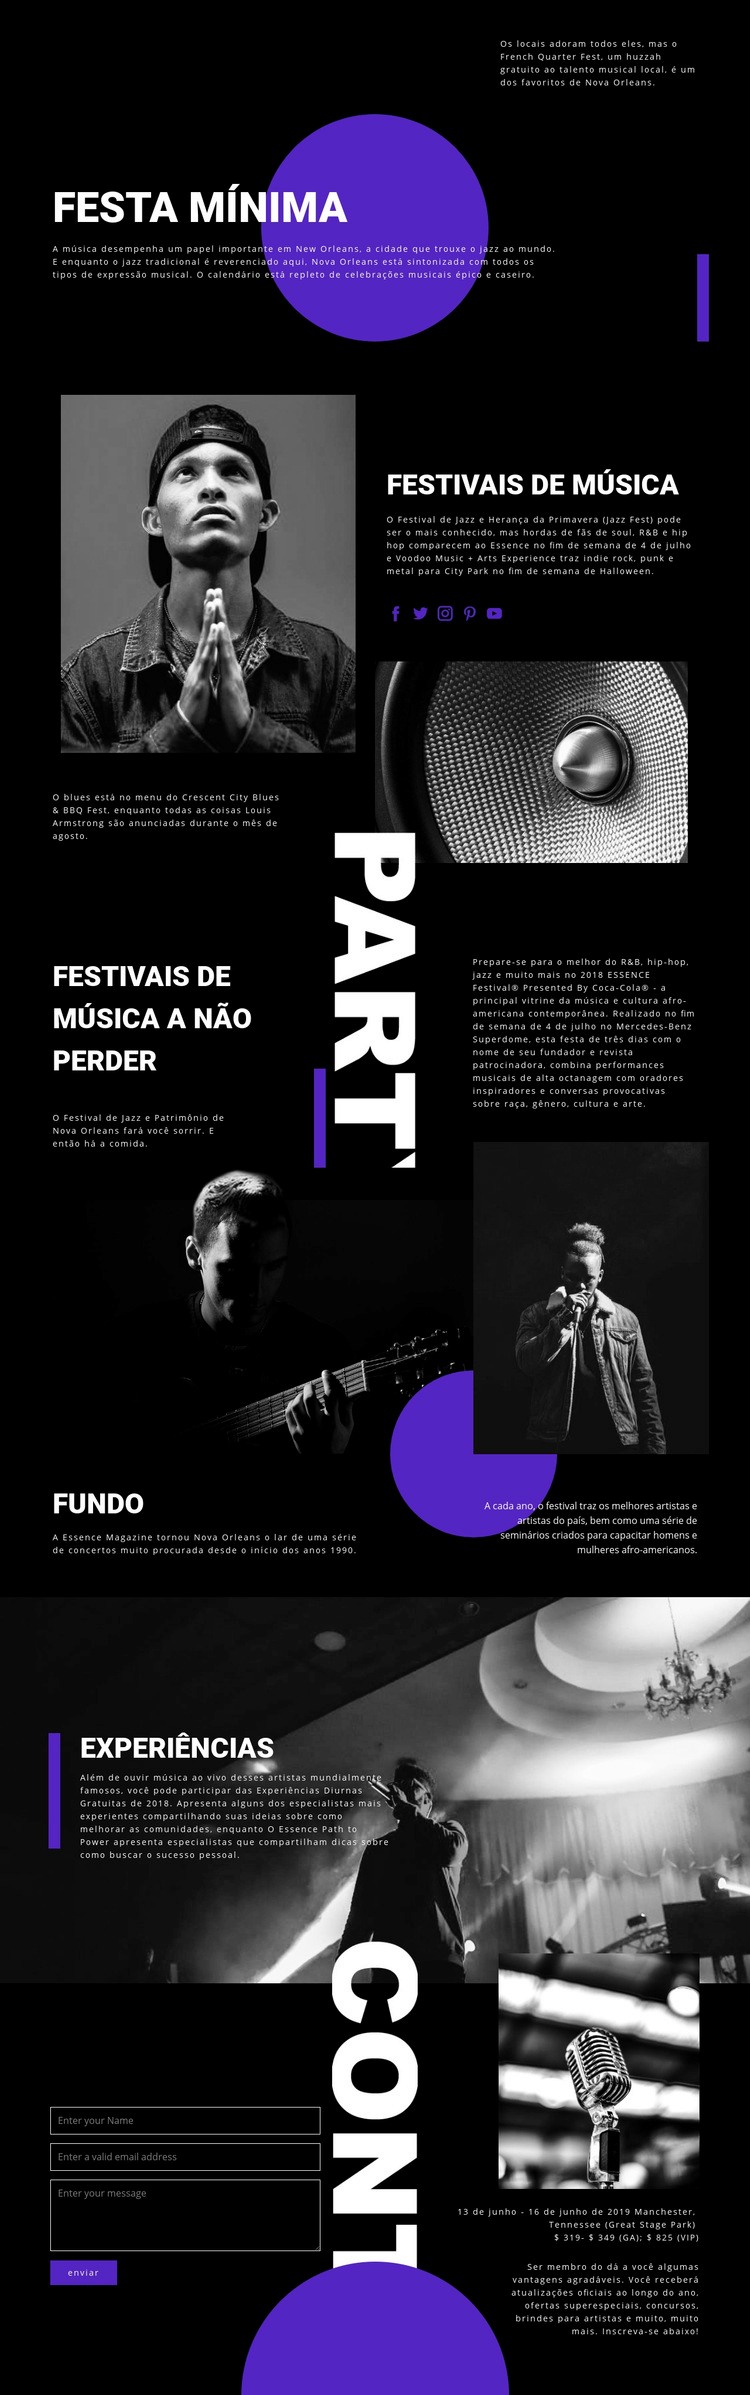 Festival de Música Modelo de uma página